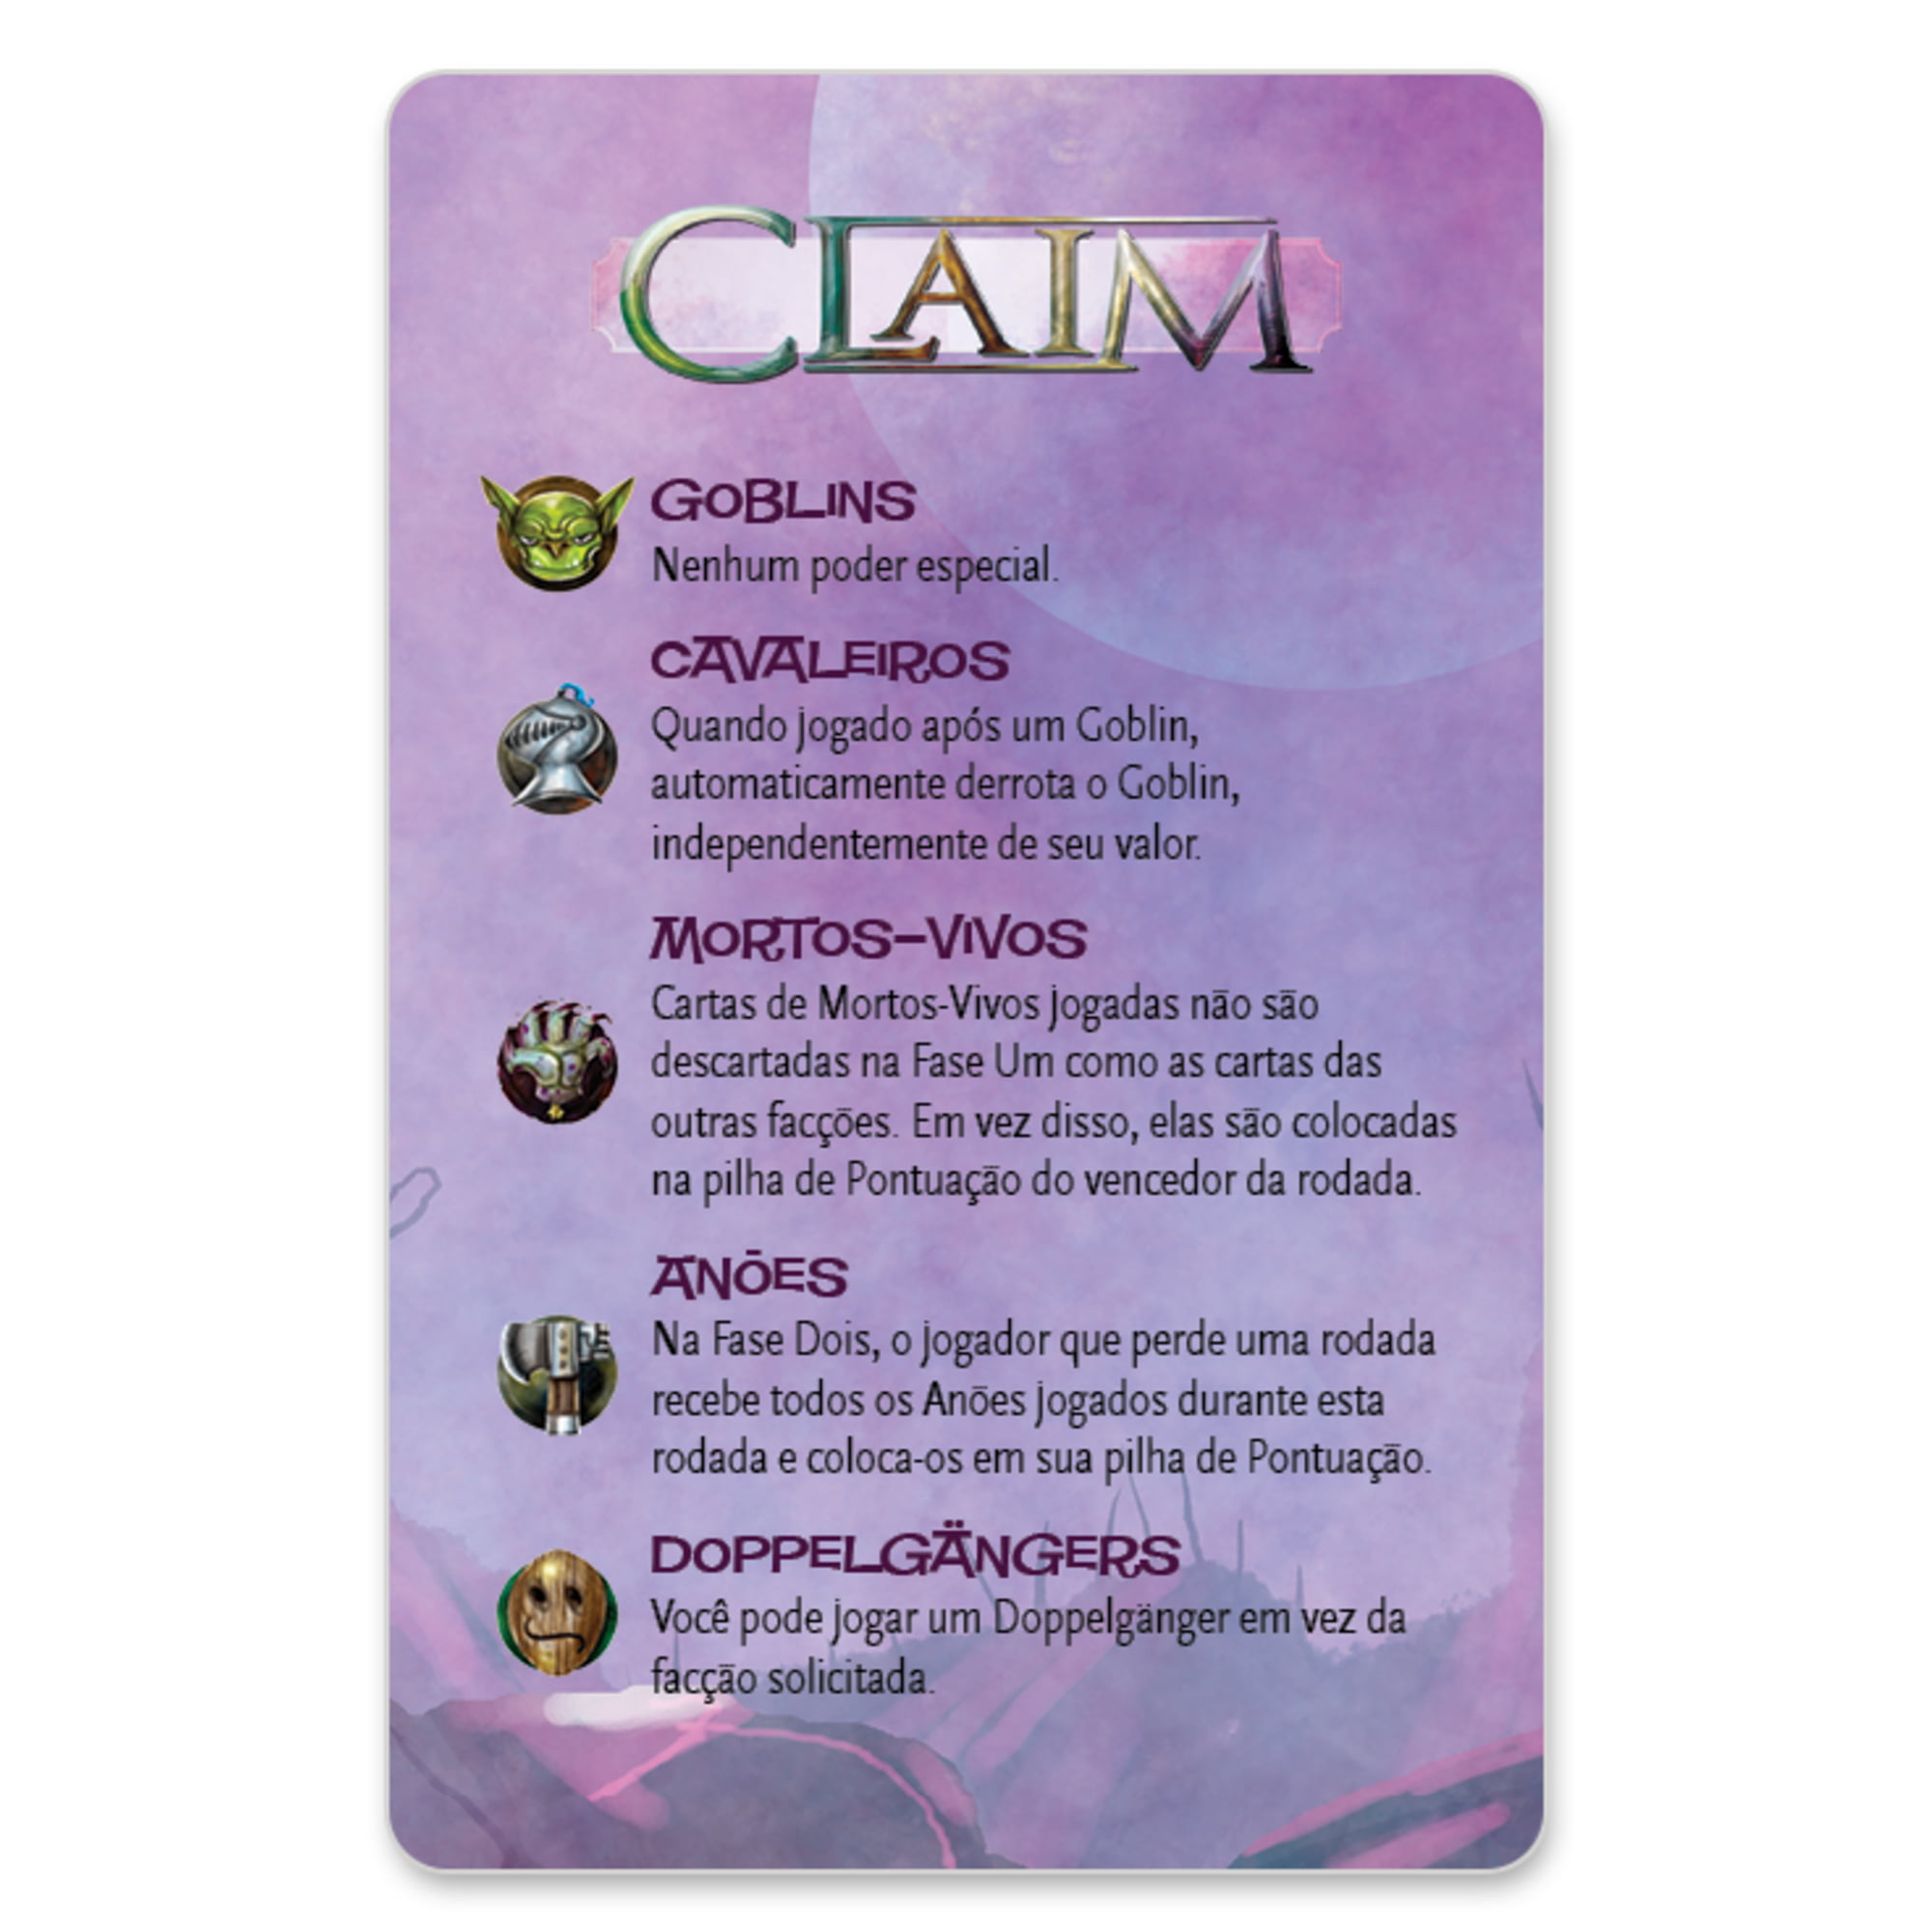 Claim - PaperGames